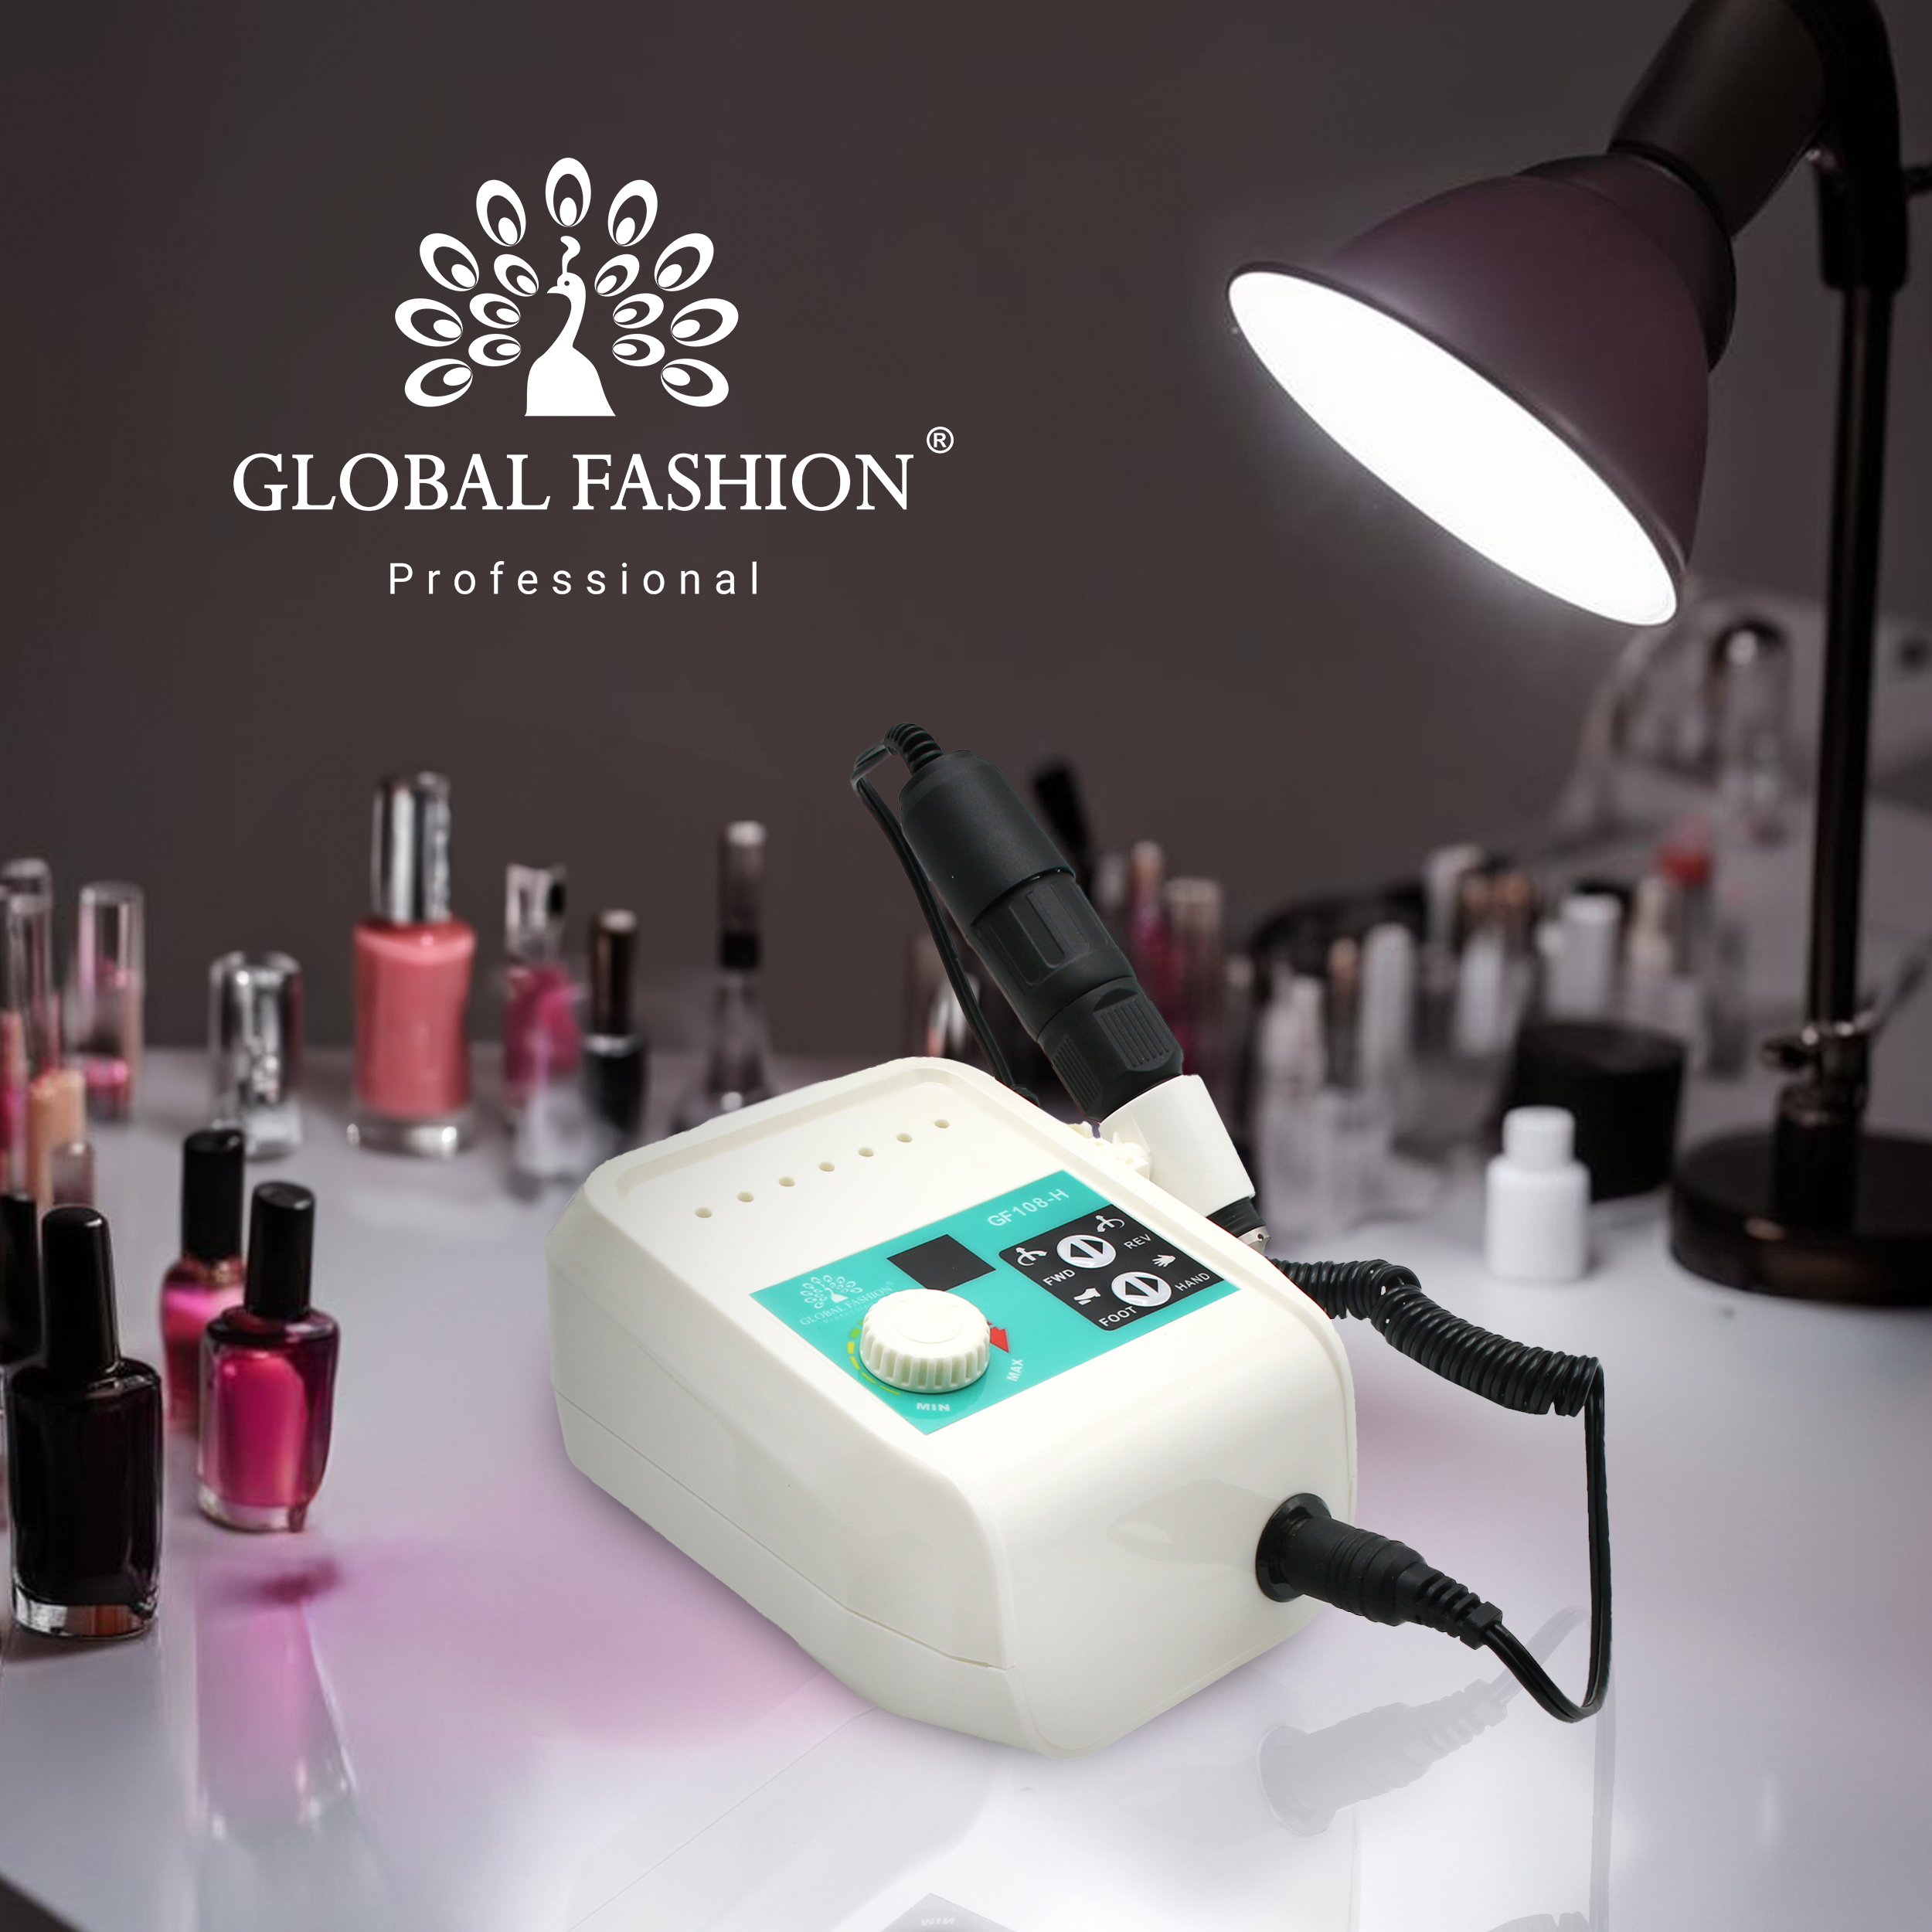 Профессиональный фрезер для маникюра GF-108-H Global Fashion 100W 45000 об/мин: качественный продукт от производителя